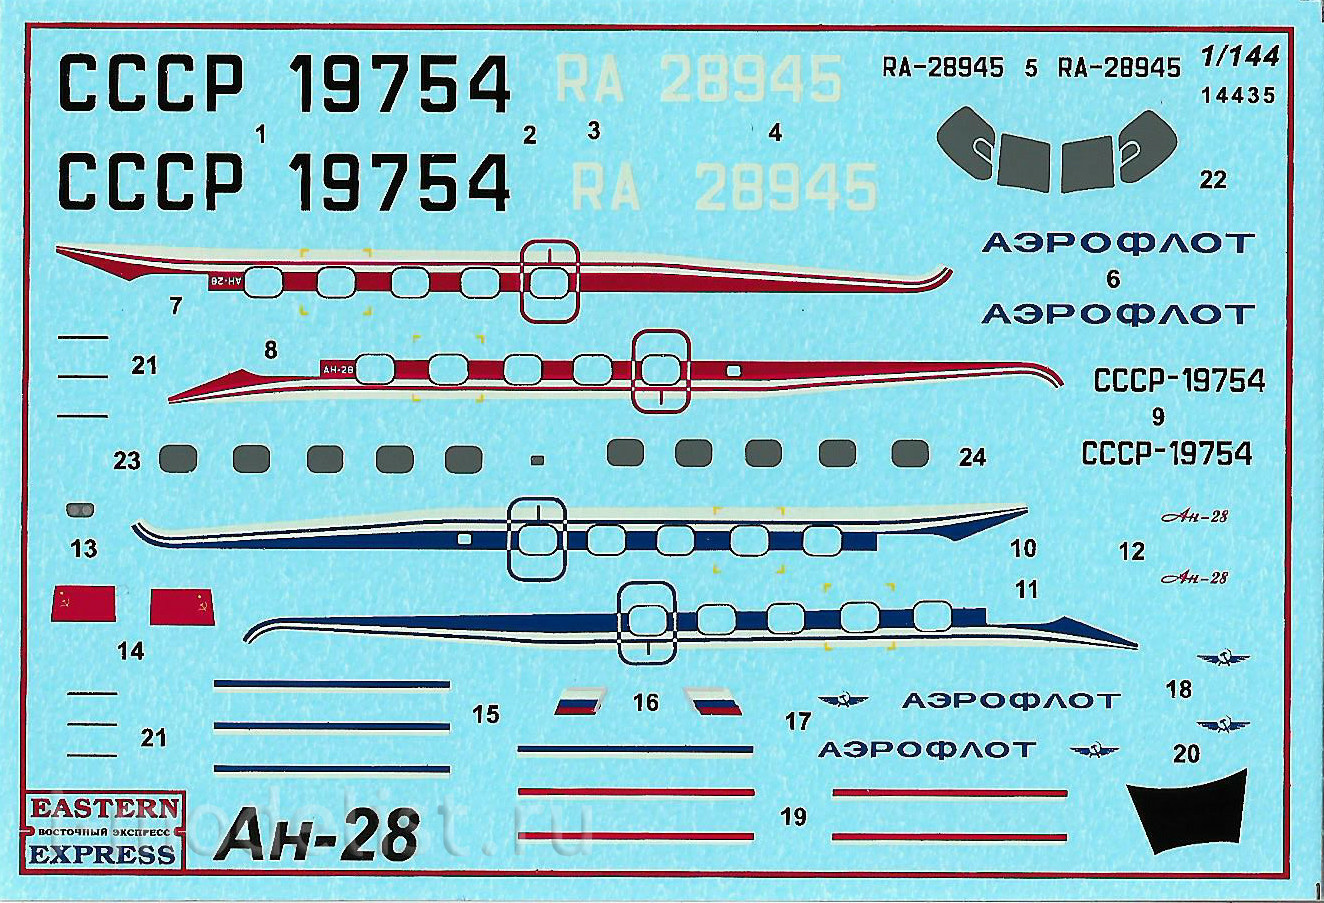 14435 Orient Express 1/144 Passenger aircraft An-28 Aeroflot